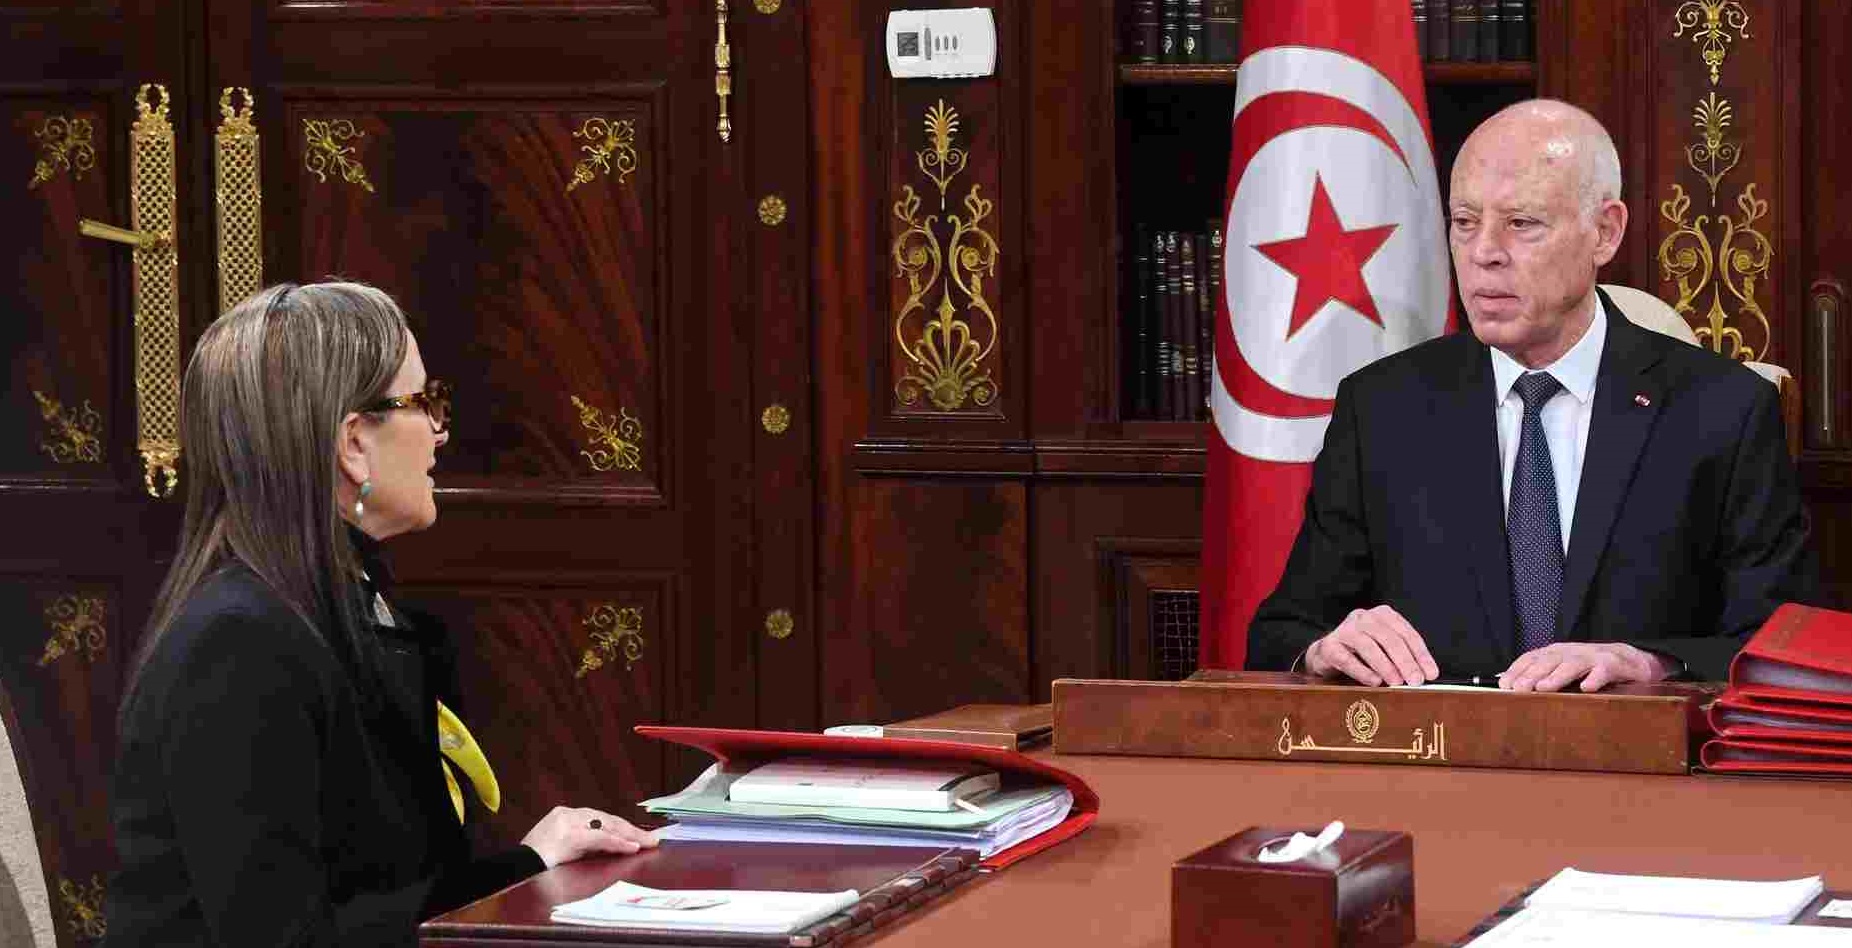 Tunisie – Saïed remanie le gouvernement un ministre à la fois…. Qui sera le prochain à sauter ?